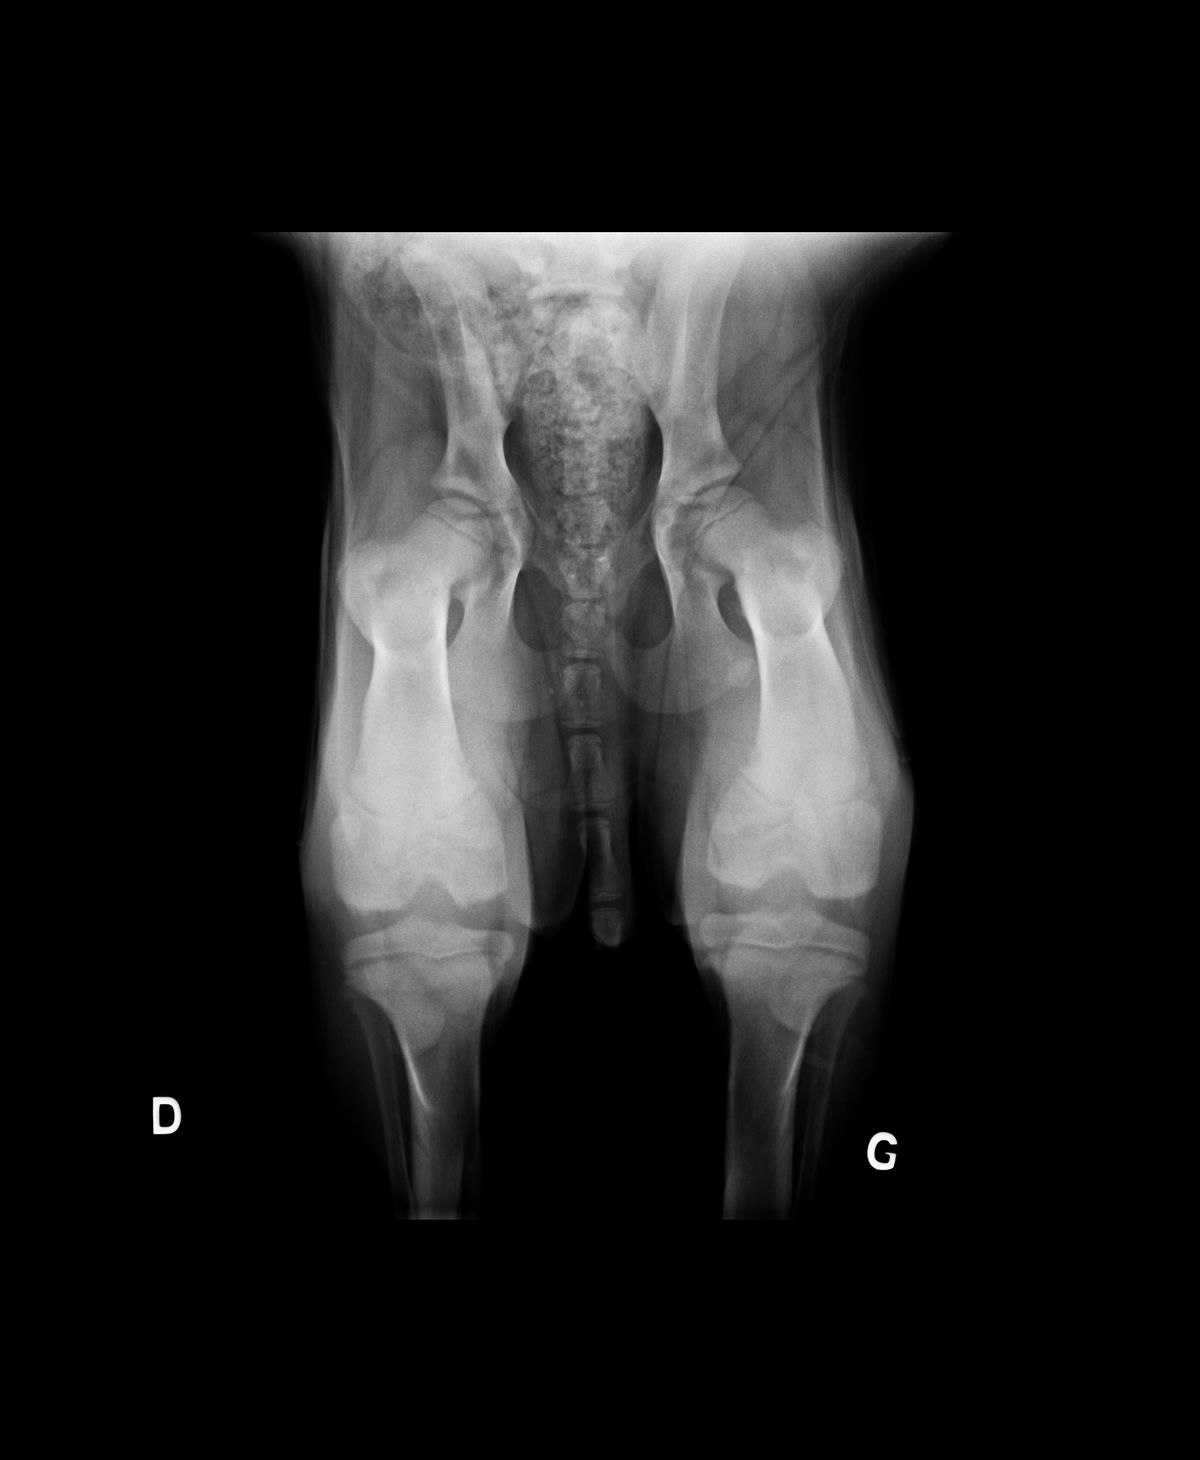 Radiograpie de dépistage précoce de dysplasie en compression (décubitus dorsal, hanches à environ 110° et grassets à 90°, compression latéro-médiale sur les hanches)